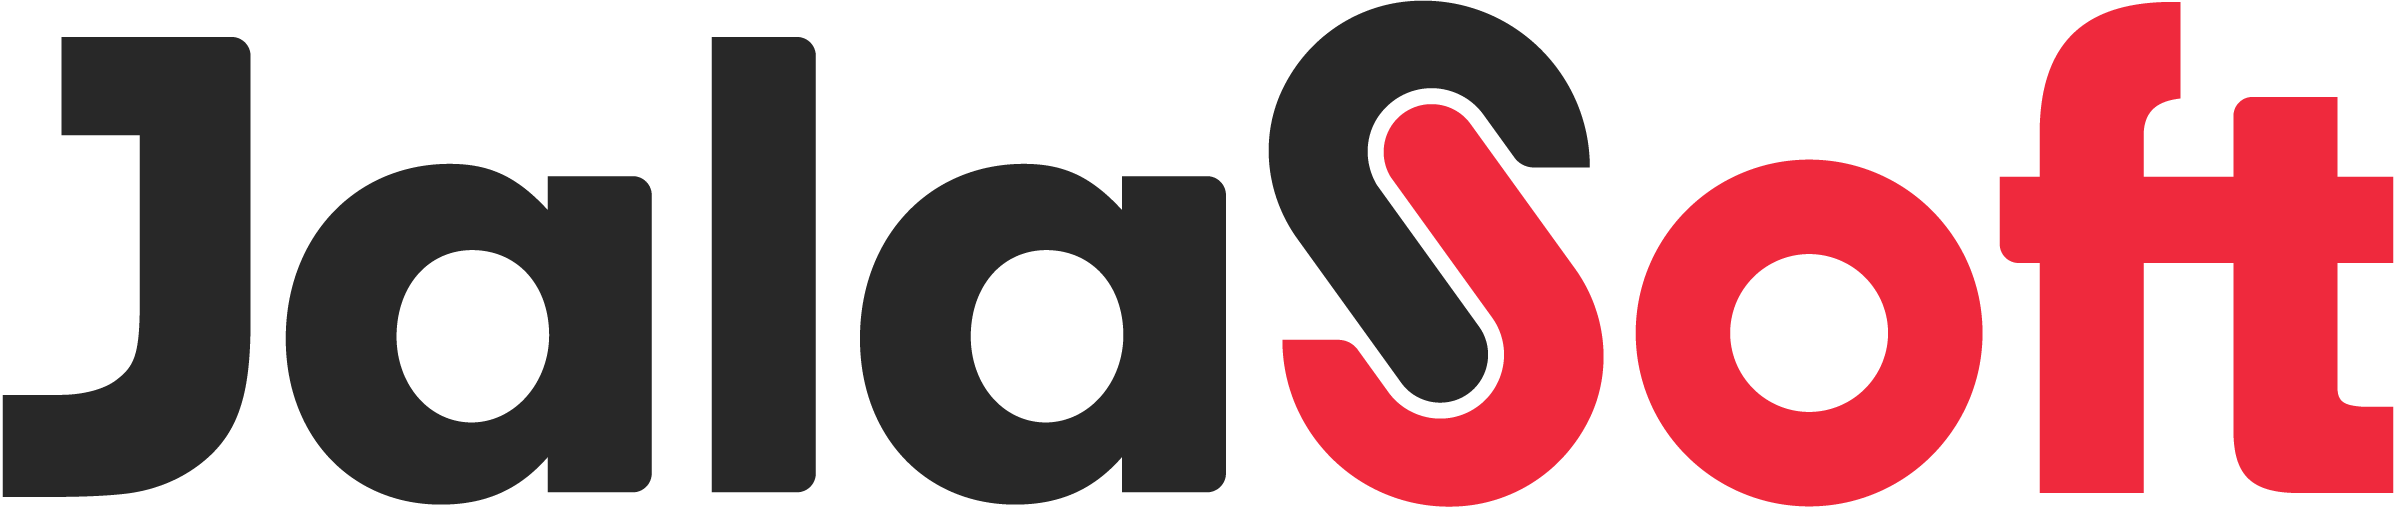 logo-jalasoft